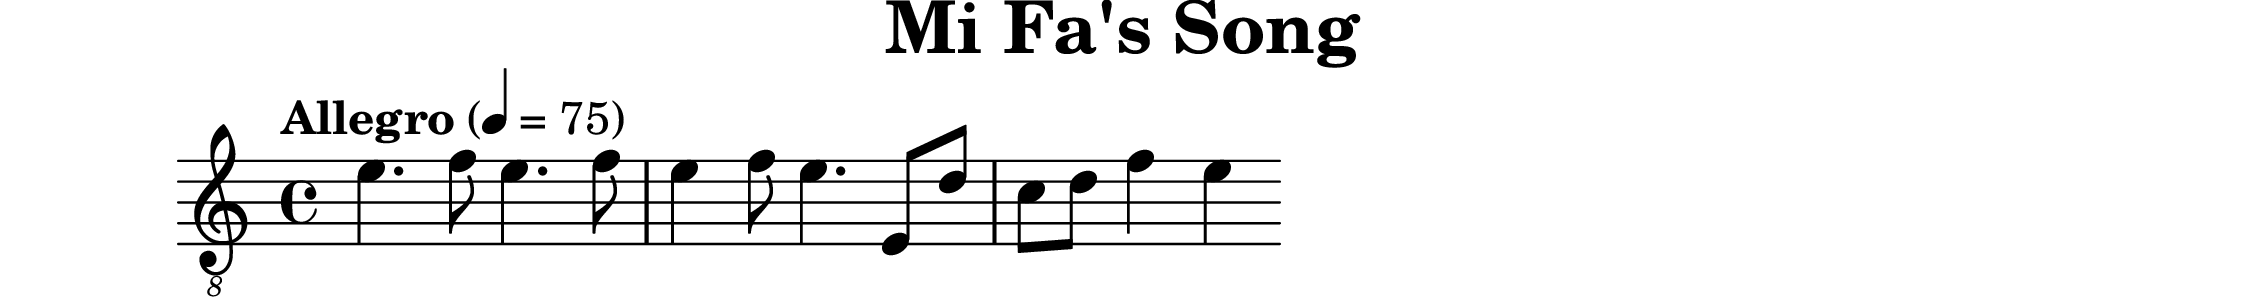 \version "2.20.0"
 \header {
   title = "Mi Fa's Song"
   copyright = "SilverRainZ"
 }

 symbols =  {
   \time 4/4
   \tempo  "Allegro" 4 = 75

    %1
    e'4. f'8 e'4. f'8
    e'4 f'8 e'4. e8 d'
    c'8 d' f'4 e'4
}

 \score {
   <<
     \new Staff \with {midiInstrument = "acoustic guitar (nylon)"} {
       \clef "G_8"
       \symbols
     }
     % \new TabStaff {
     %   \tabFullNotation
     %   \symbols
     % }
   >>

   \midi { }
   \layout { }
 }